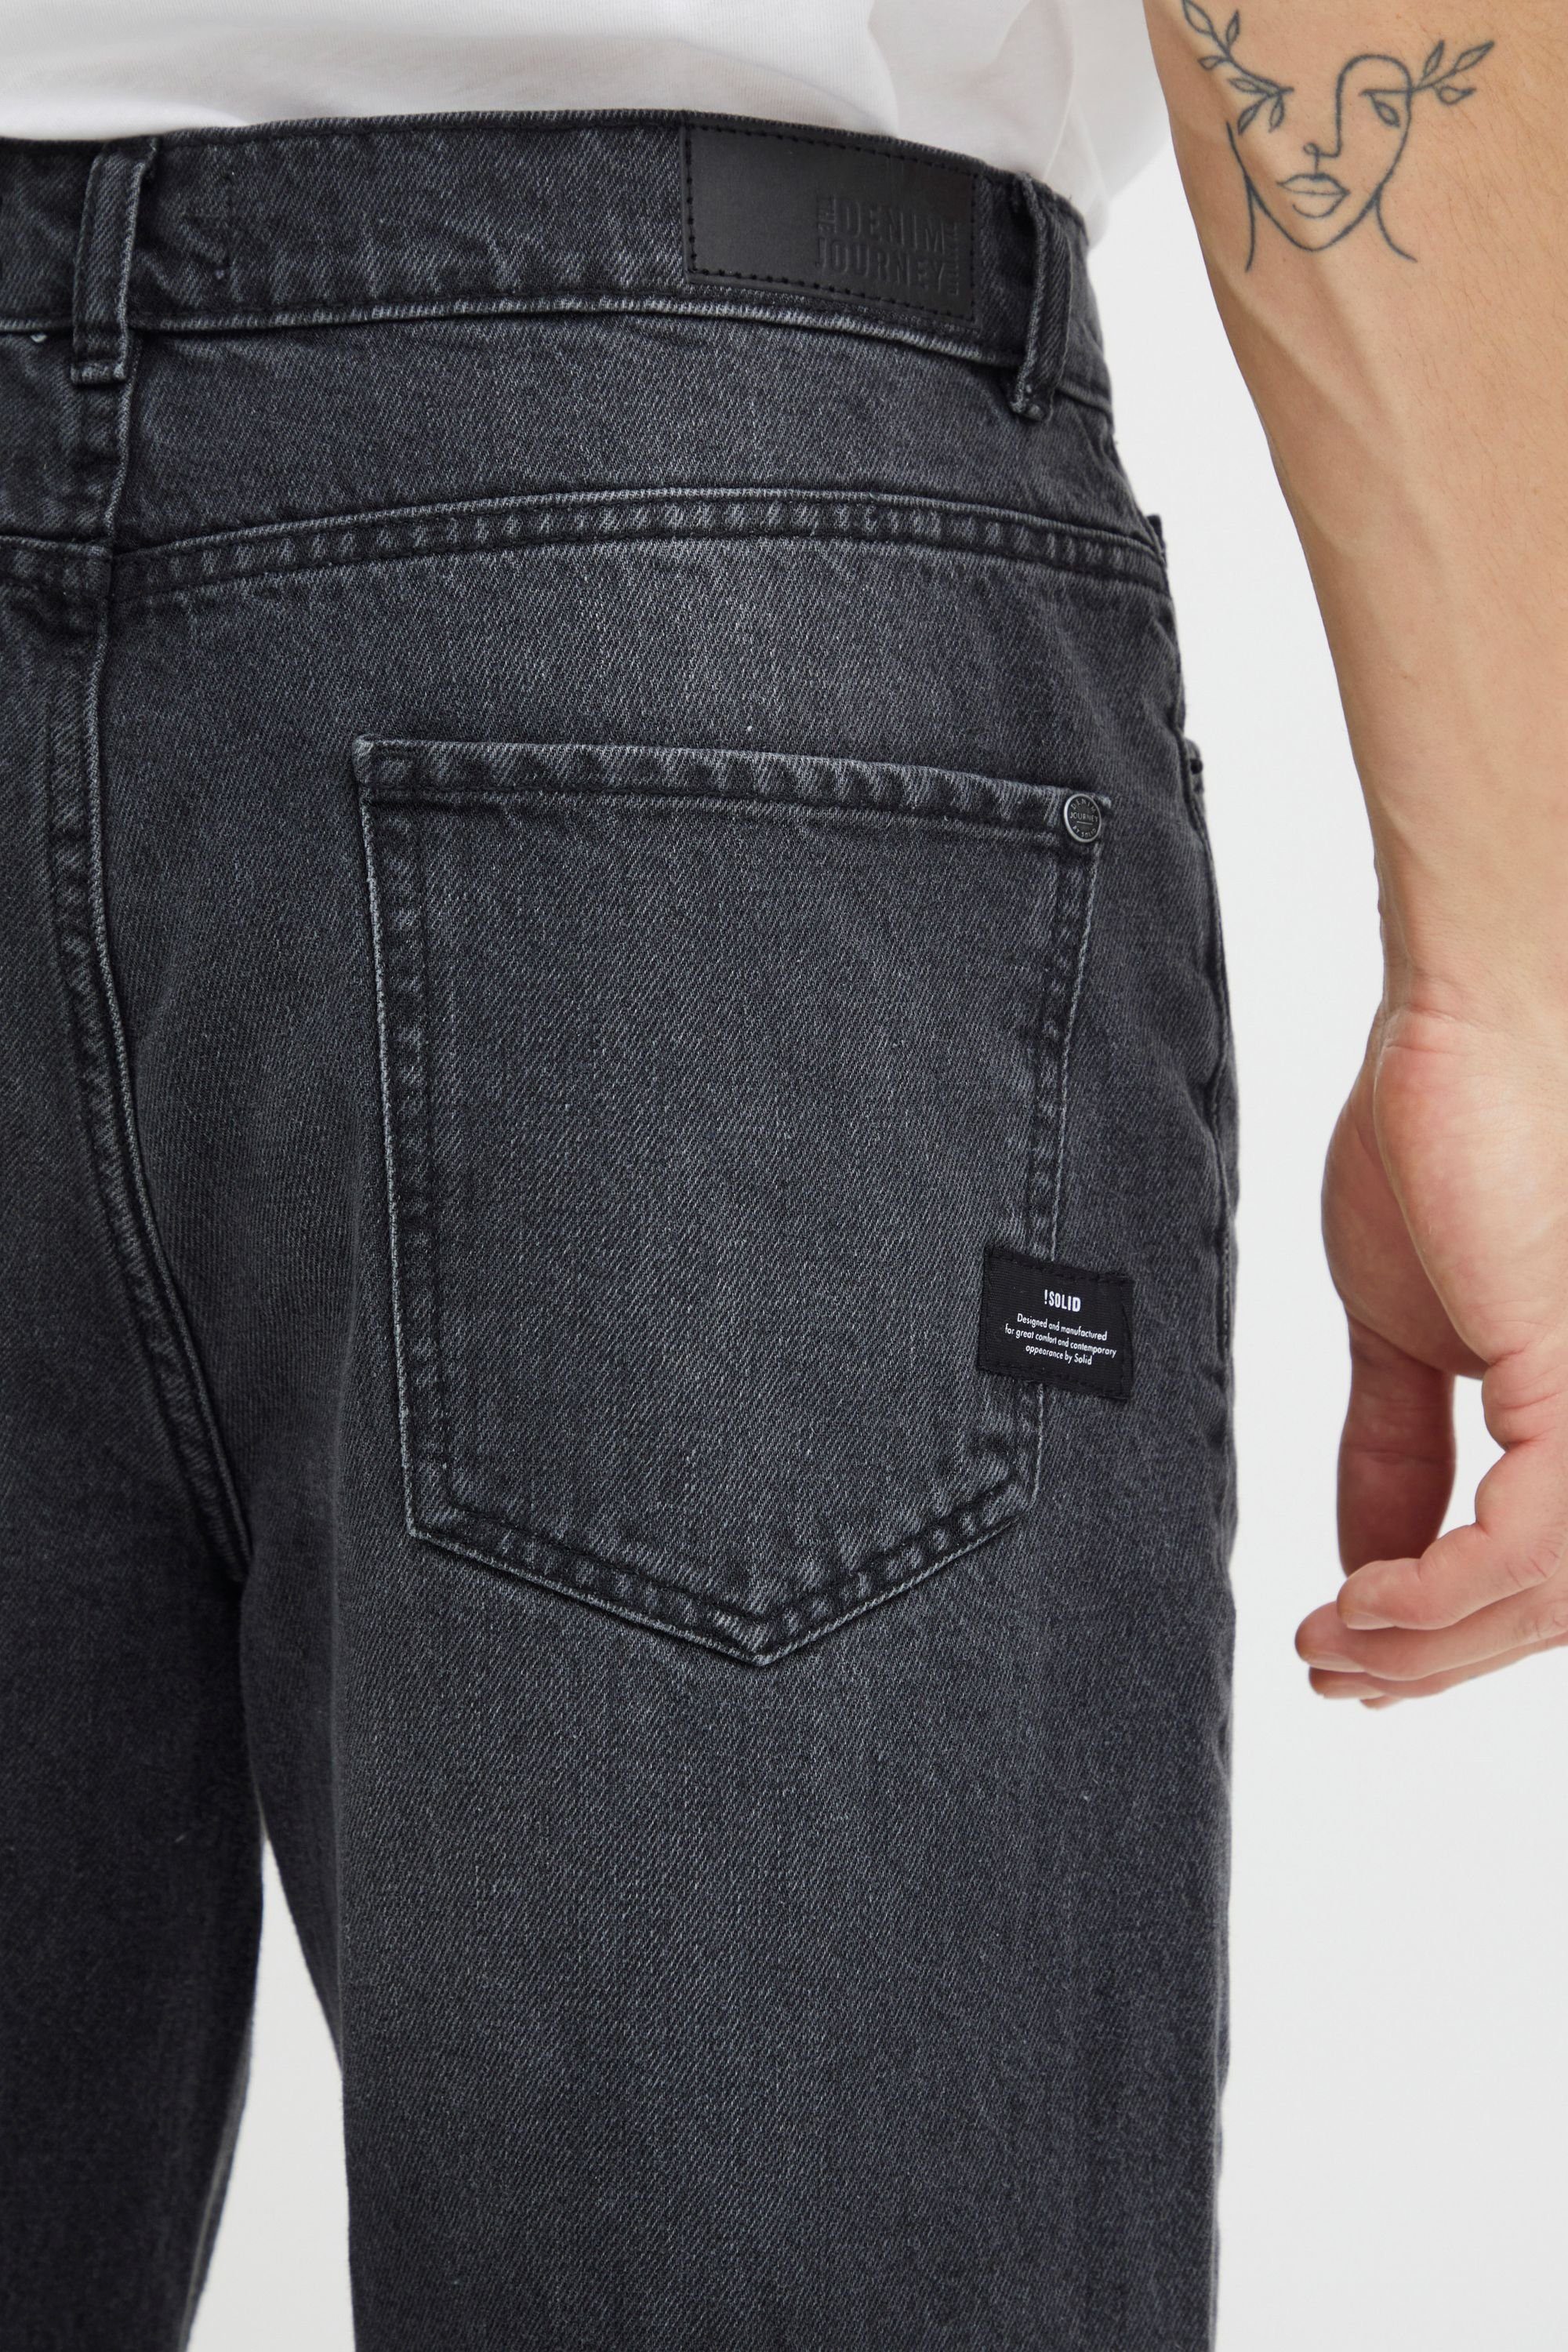 Solid 5-Pocket-Jeans SDBoaz Black (700036) Vintage Denim